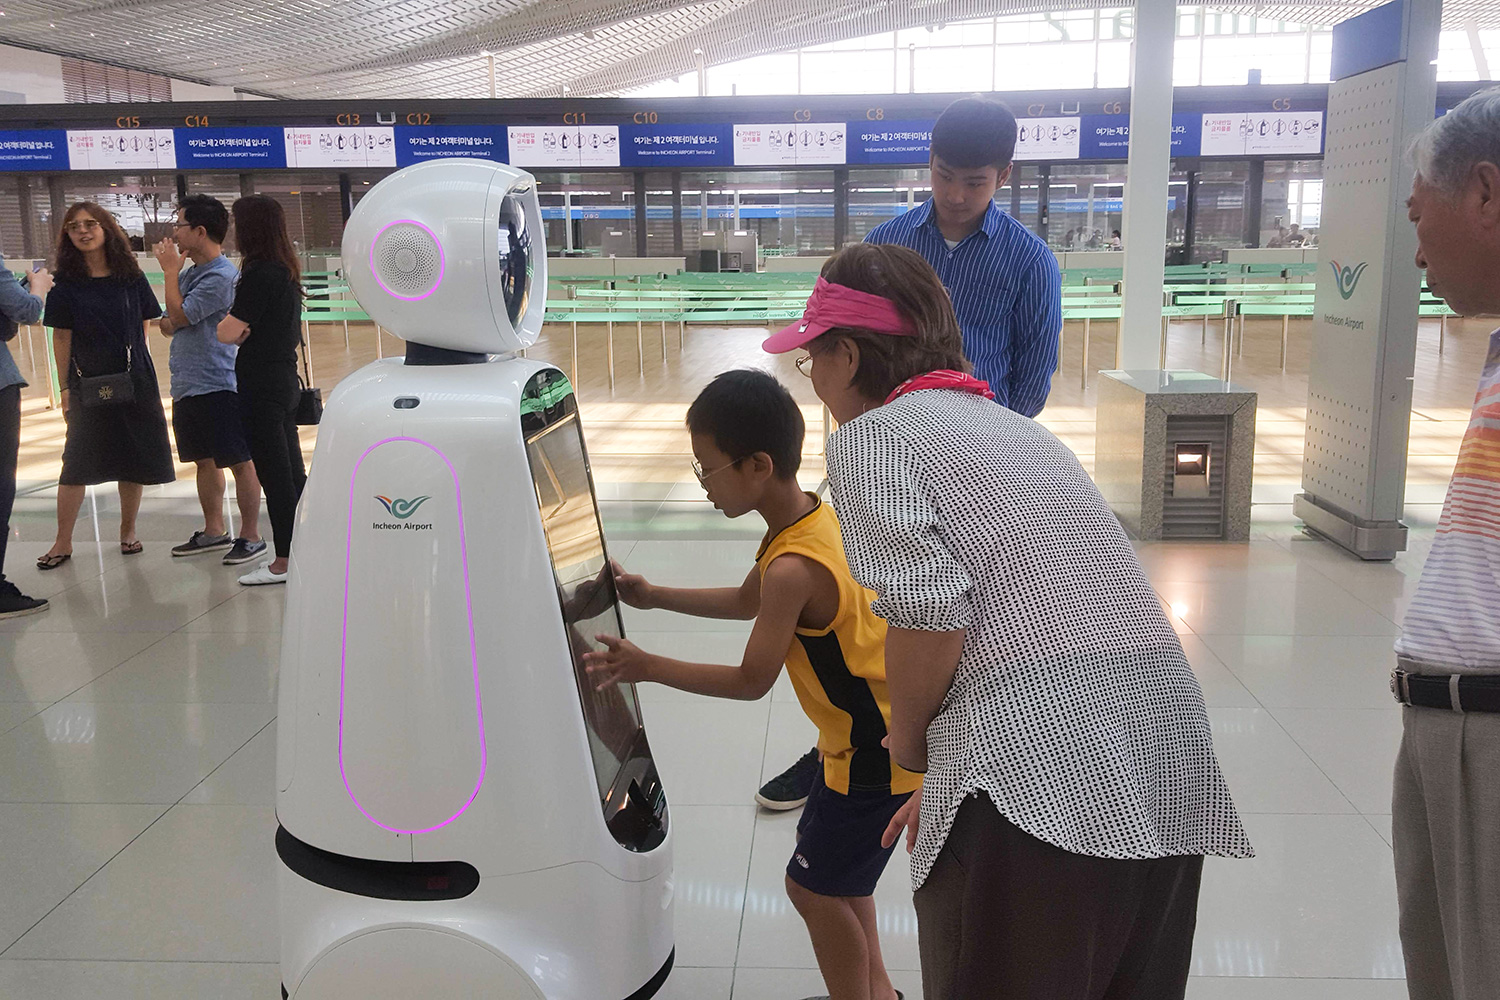 Cloi airport robot